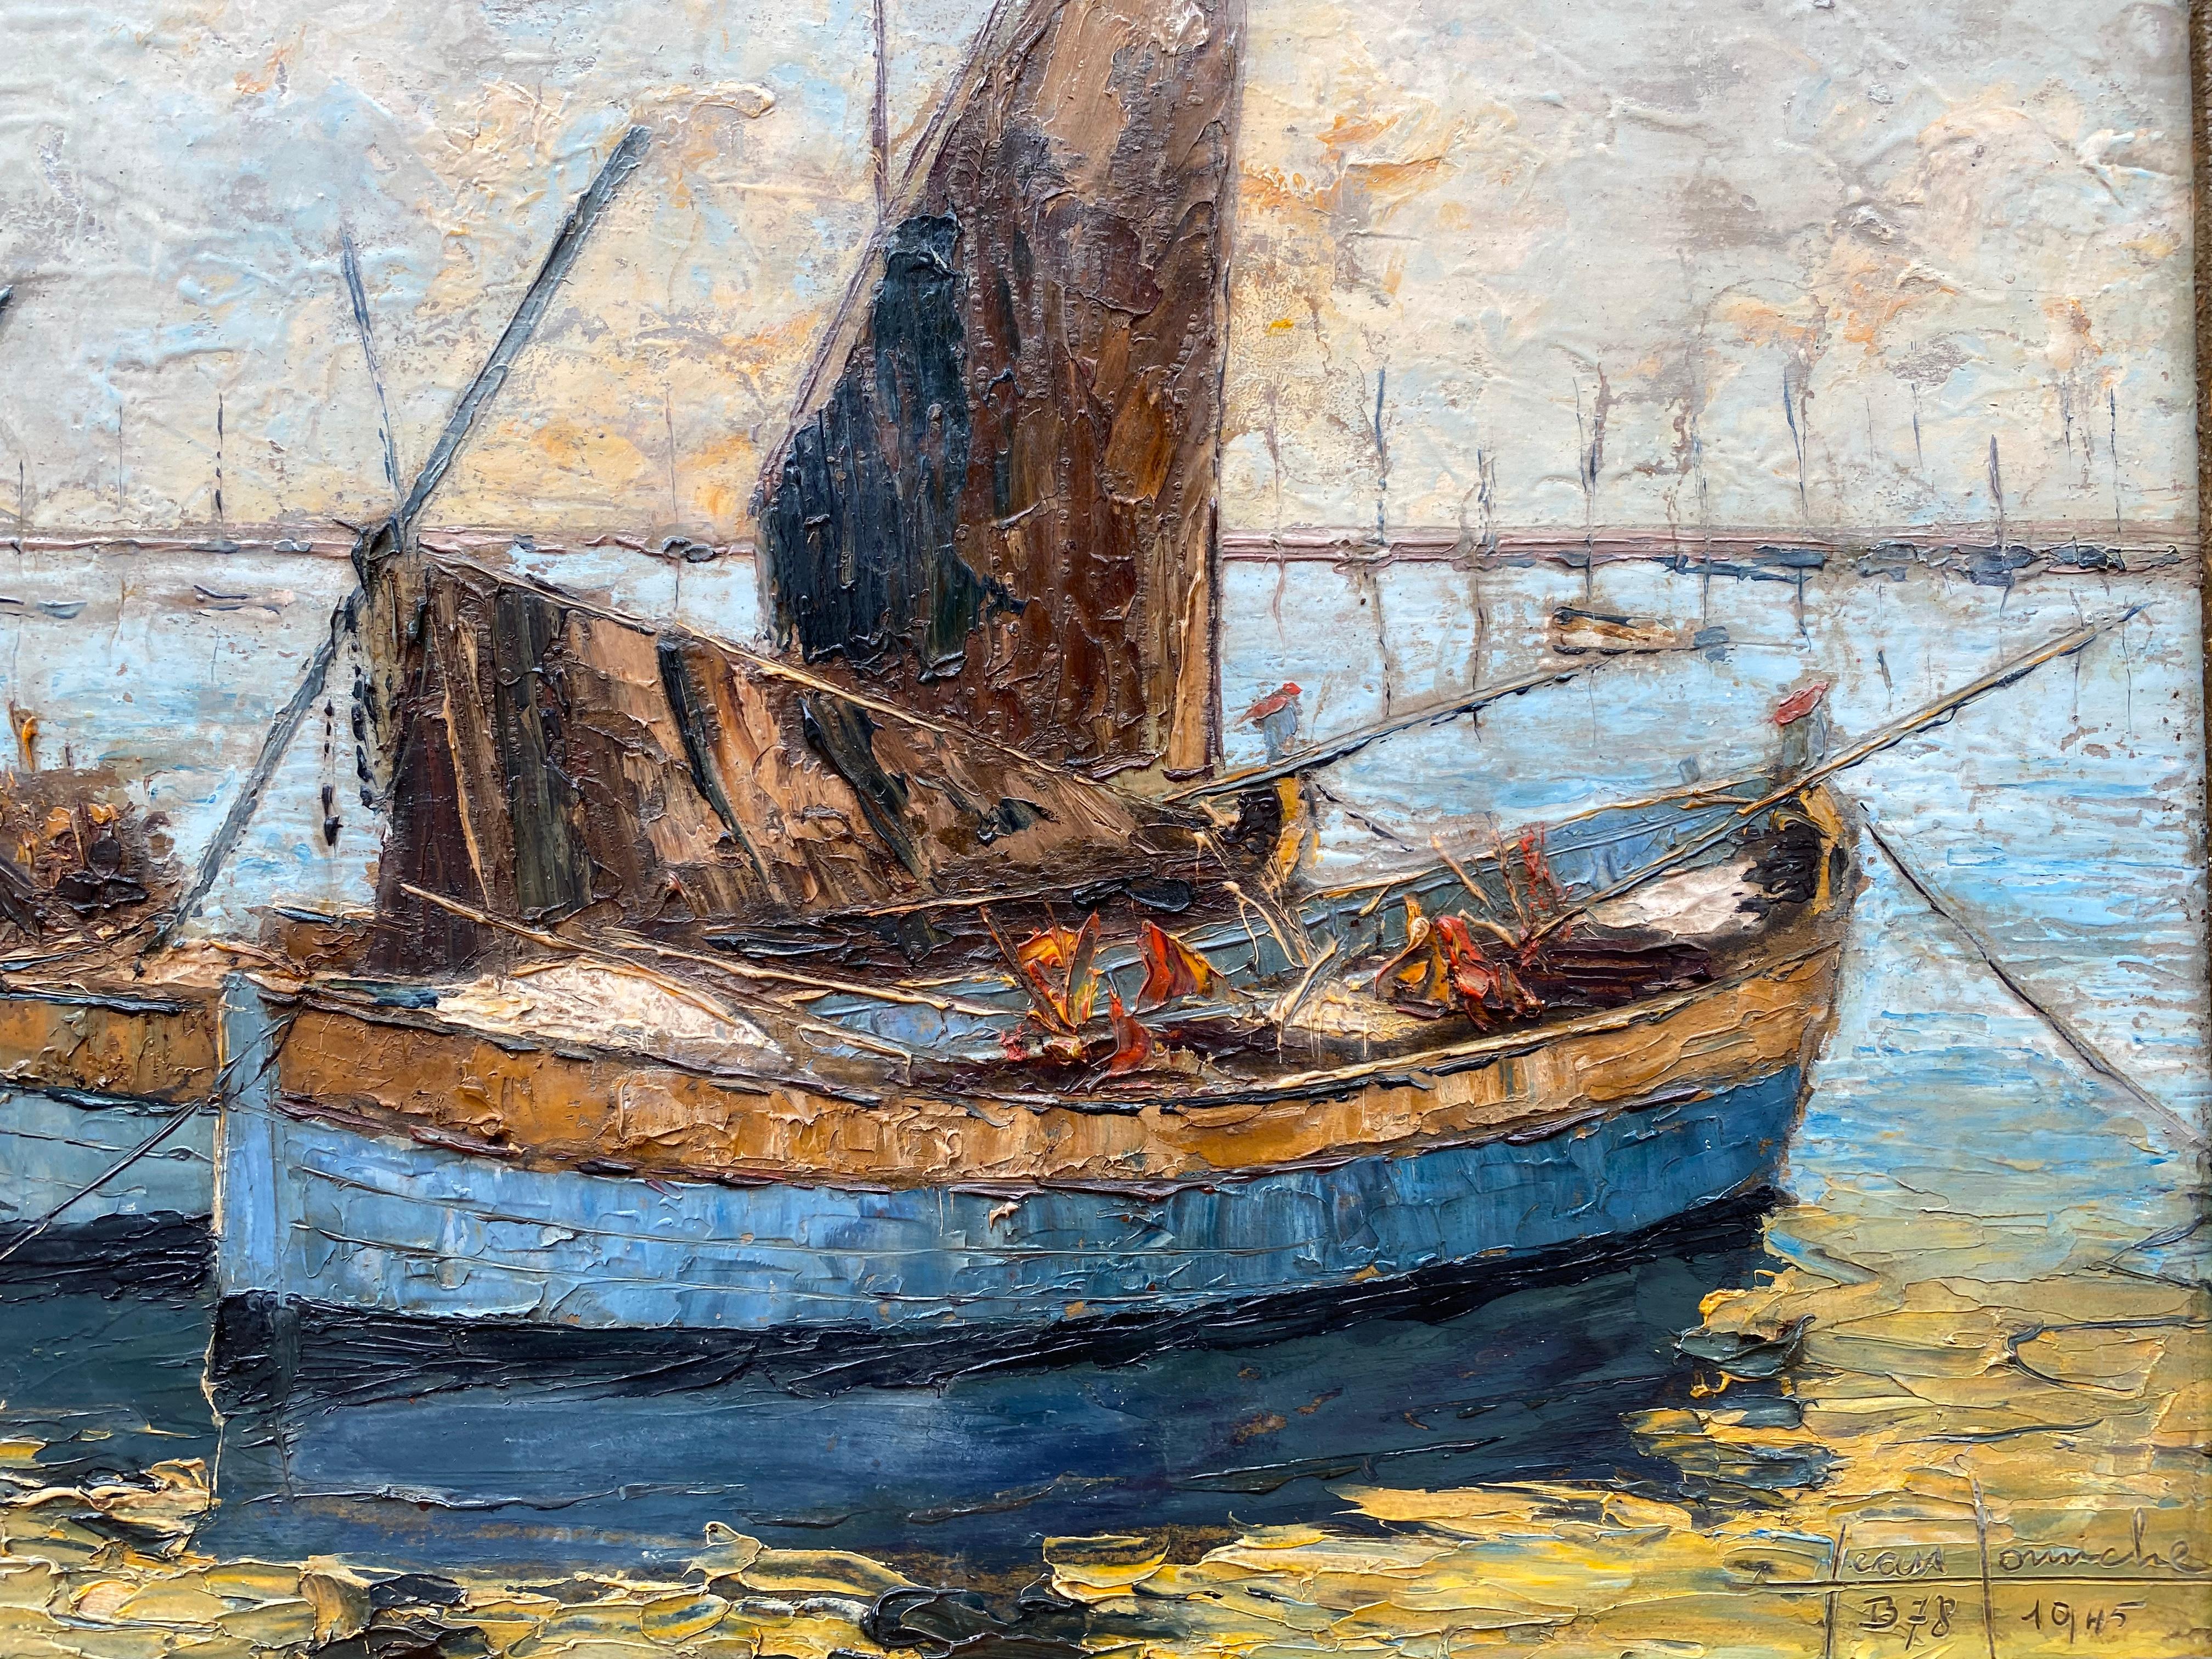 Gemälde des französischen Künstlers Jean Corniche in Öl auf Malerkarton. Signiert unten rechts und datiert 1945. Das Gemälde zeigt mehrere Fischerboote, die am Ende des Tages am Ufer anlegen. Das Gemälde ist in gutem Originalzustand und befindet